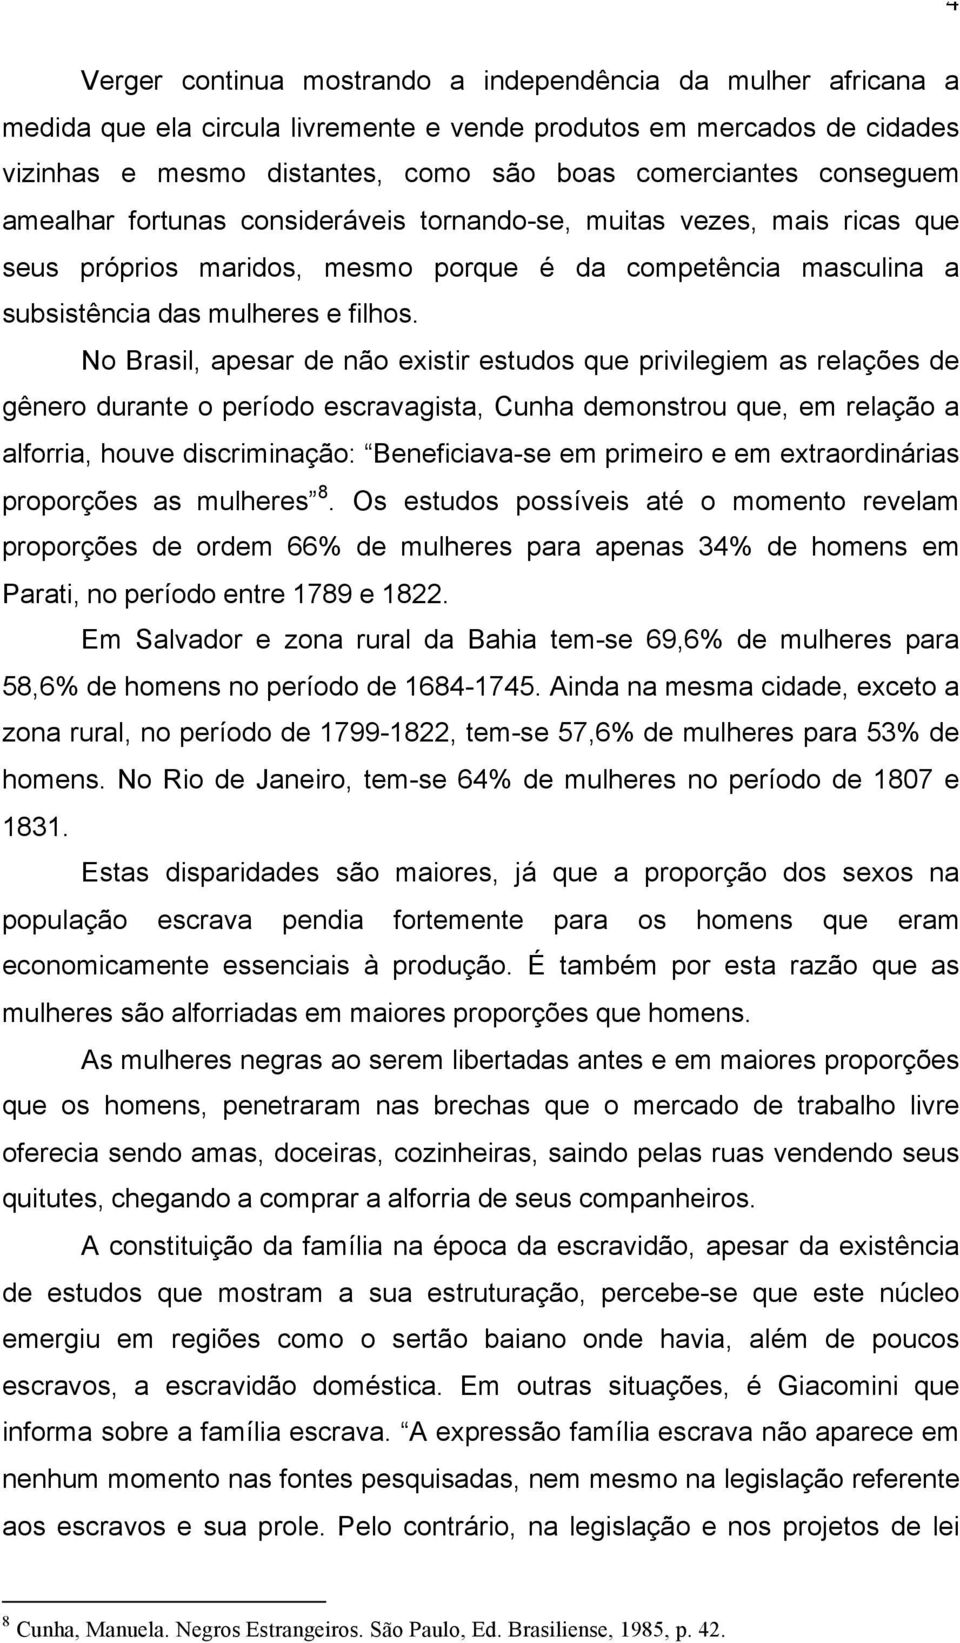 No Brasil, apesar de não existir estudos que privilegiem as relações de gênero durante o período escravagista, Cunha demonstrou que, em relação a alforria, houve discriminação: Beneficiava-se em